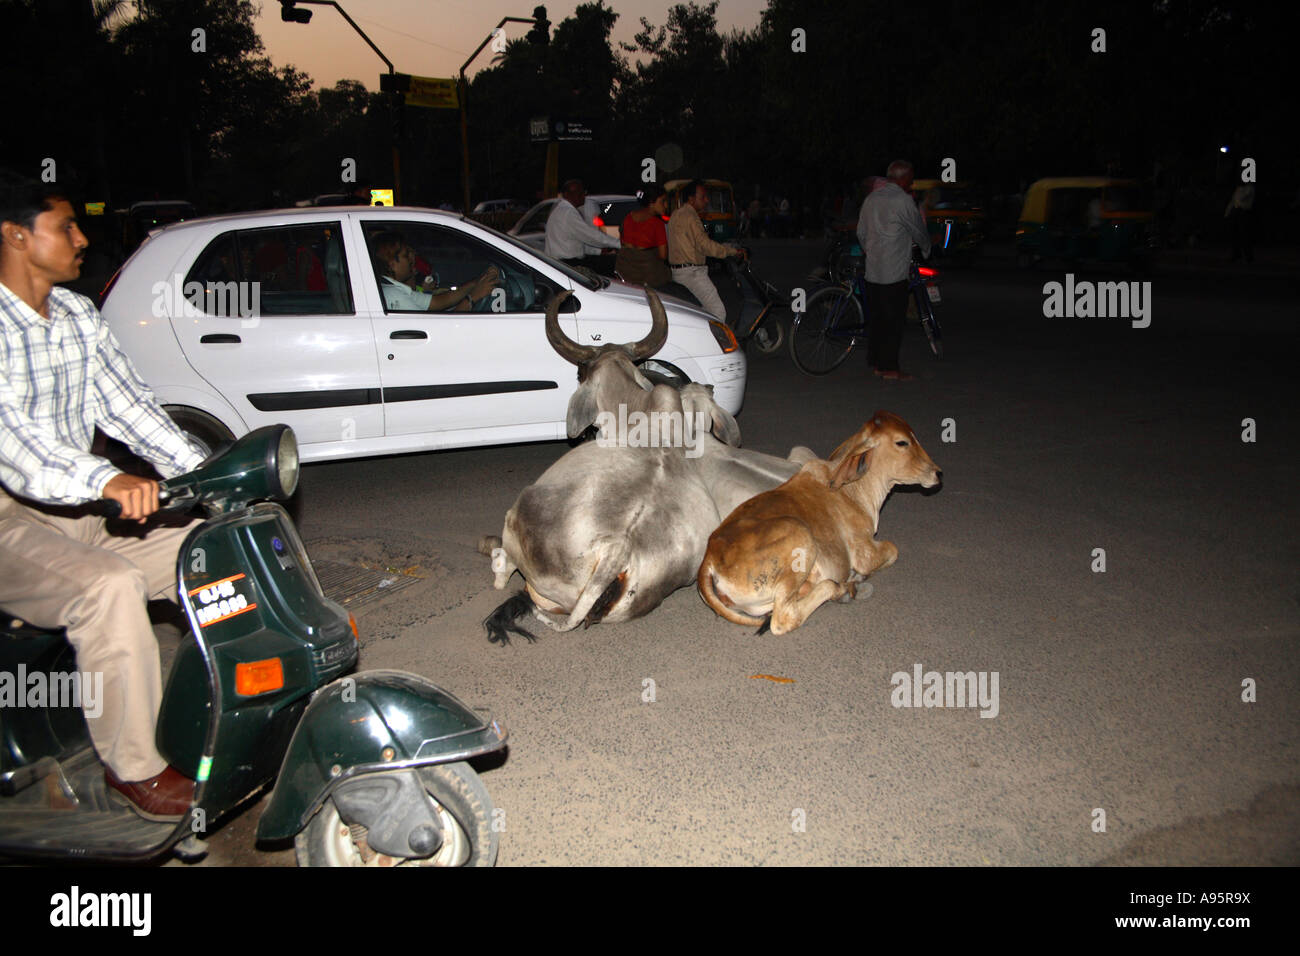 Les vaches indiennes sacrées s'inclinent au milieu de la route avec la circulation qui les entoure, Vadodara, Gujarat, Inde Banque D'Images